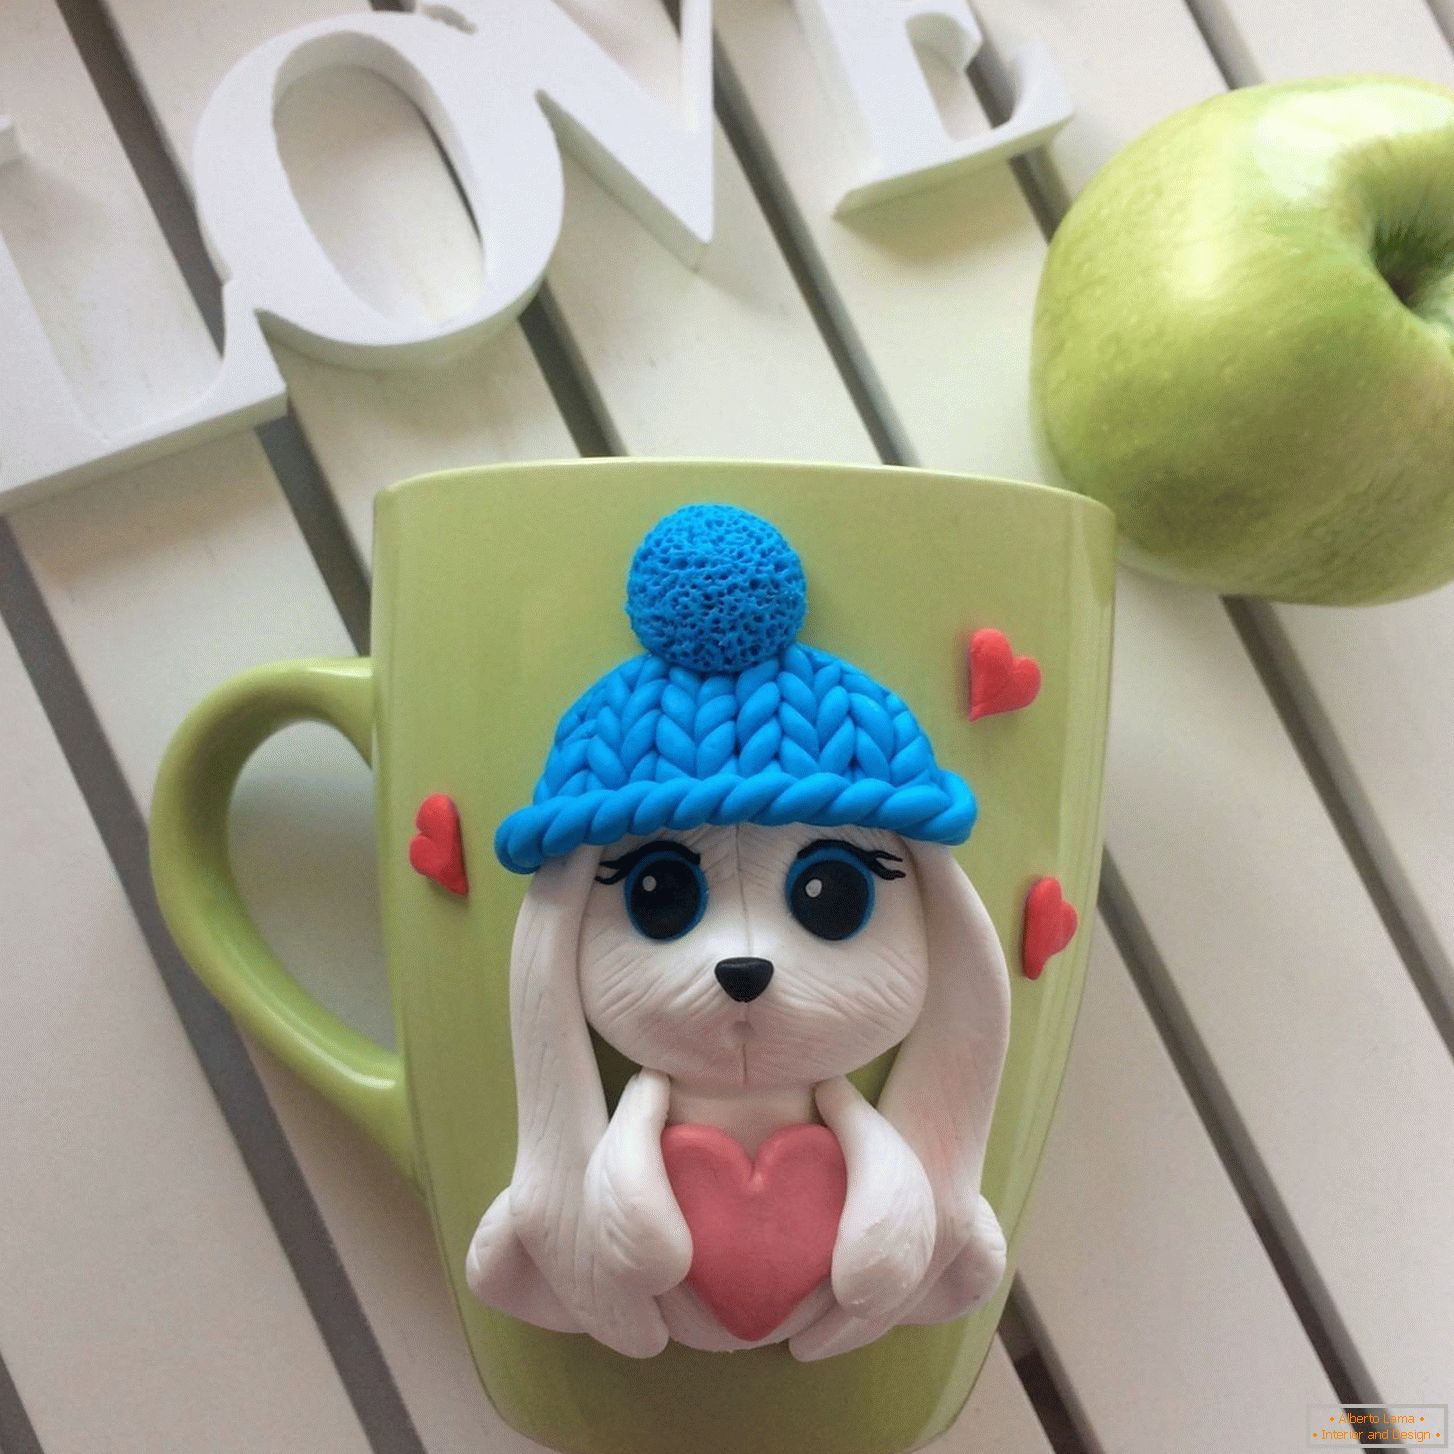 Bunny with heart on mug